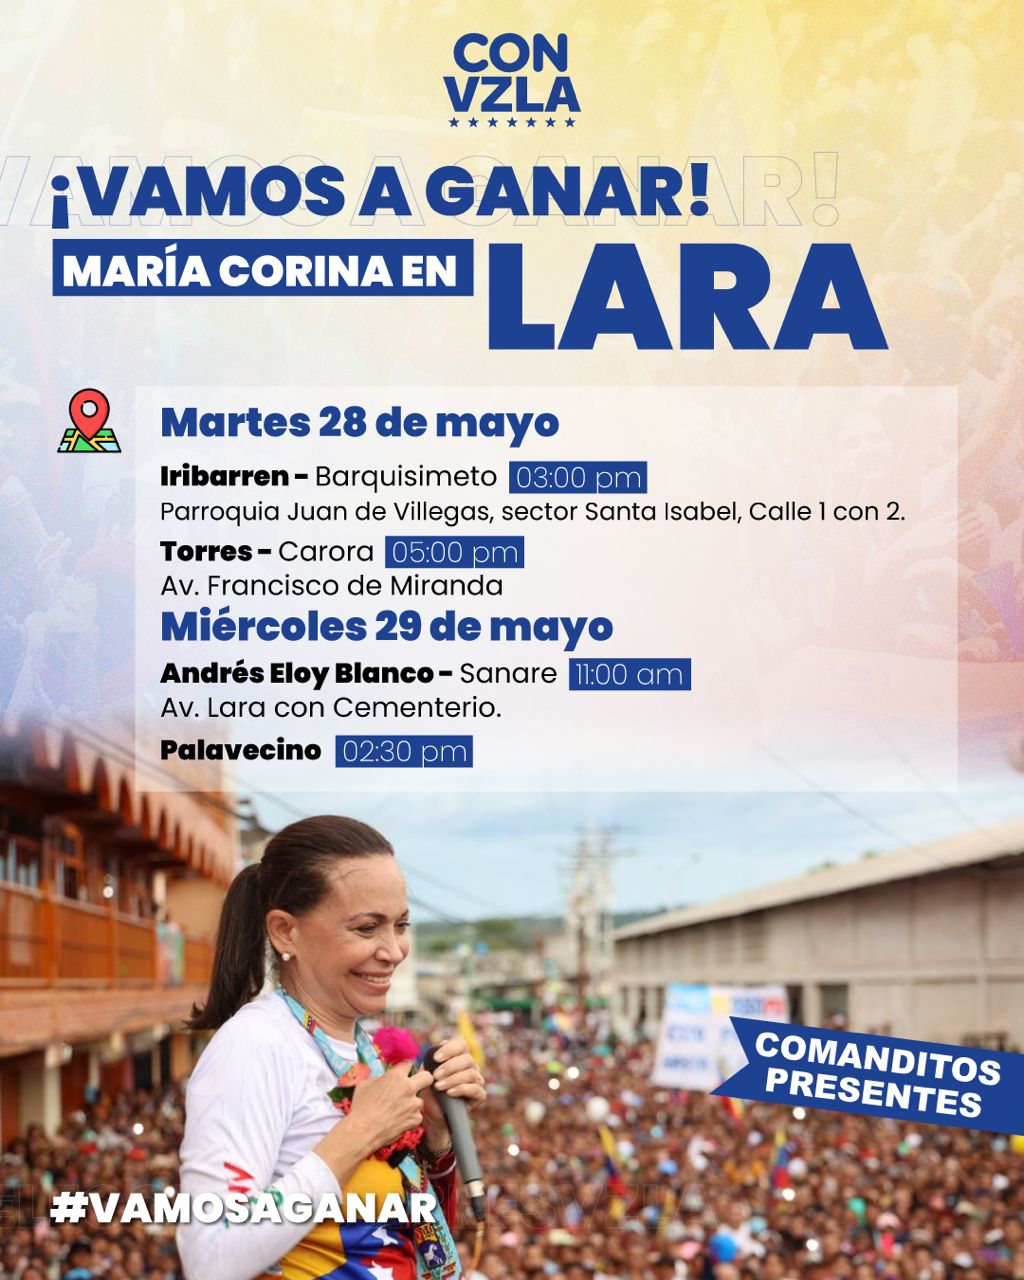 Lara se prepara para recibir este martes a la líder María Corina Machado